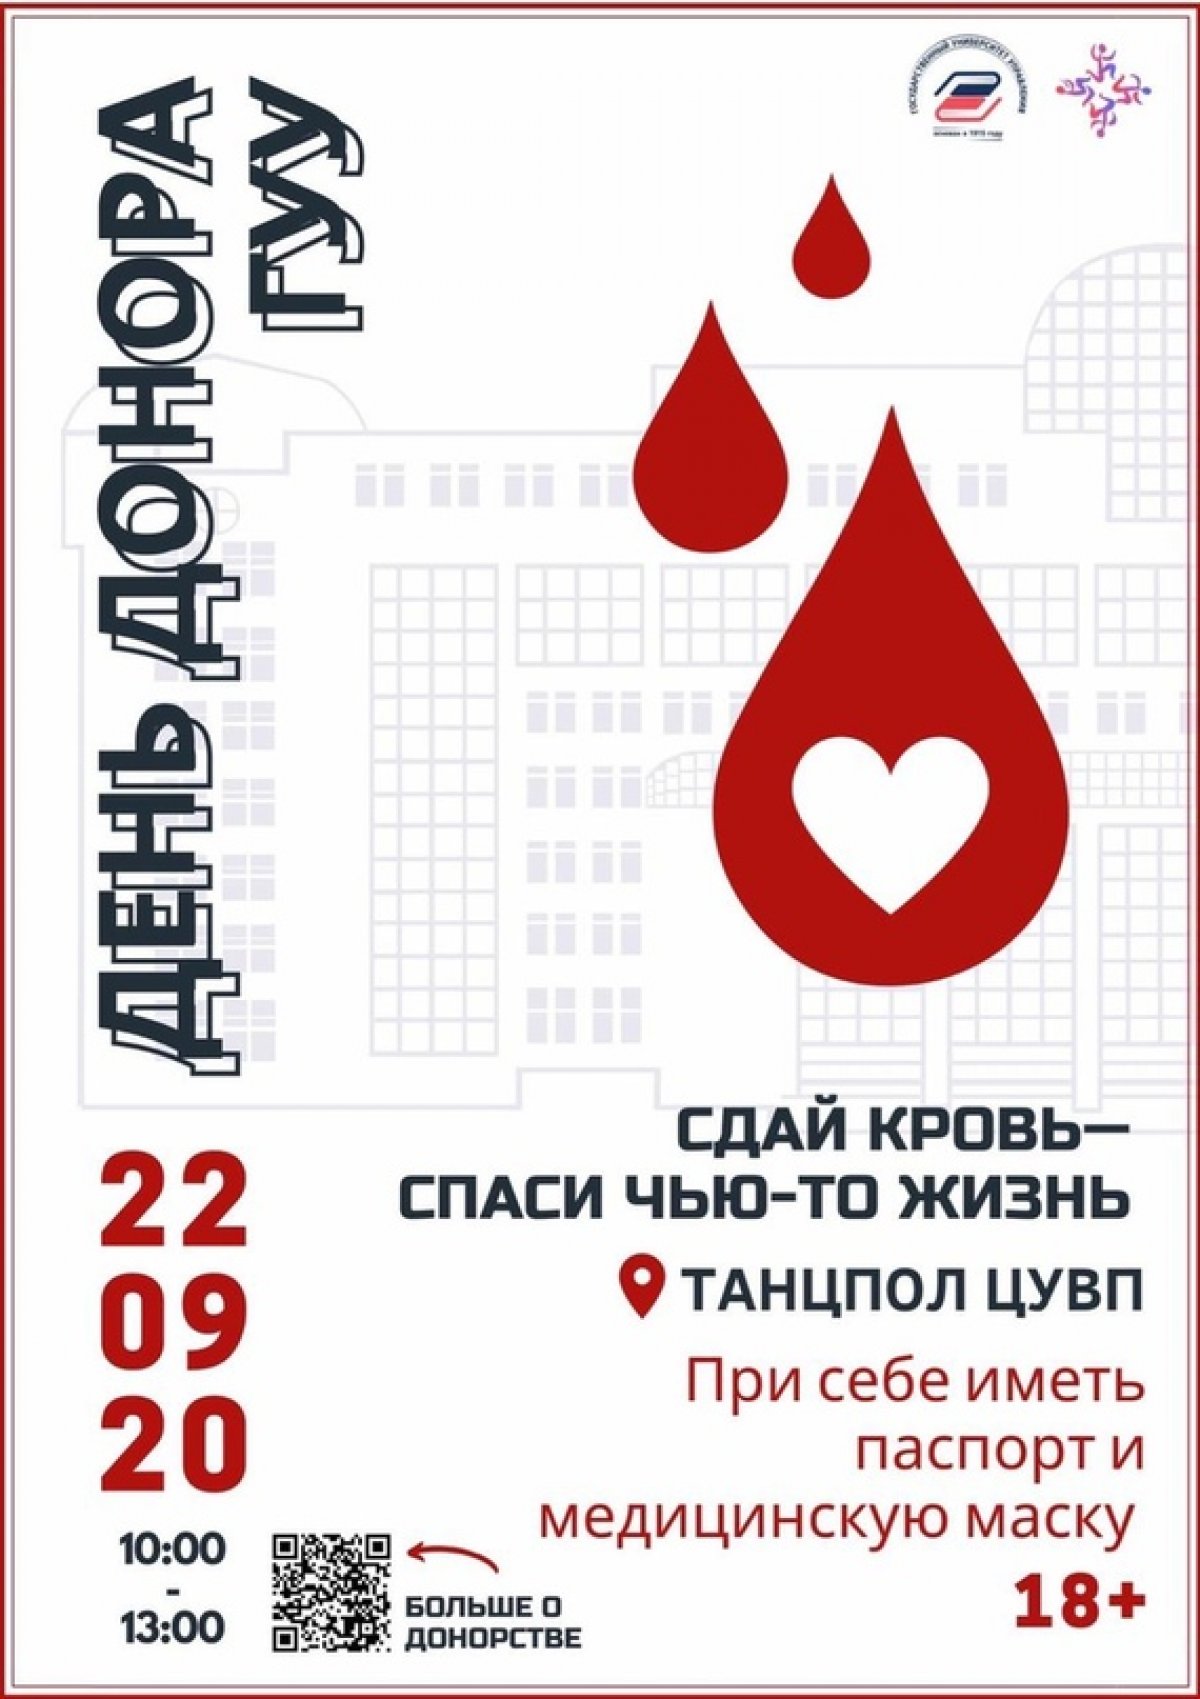 Москве, как огромному мегаполису, ежедневно требуется донорская кровь для переливания🩸